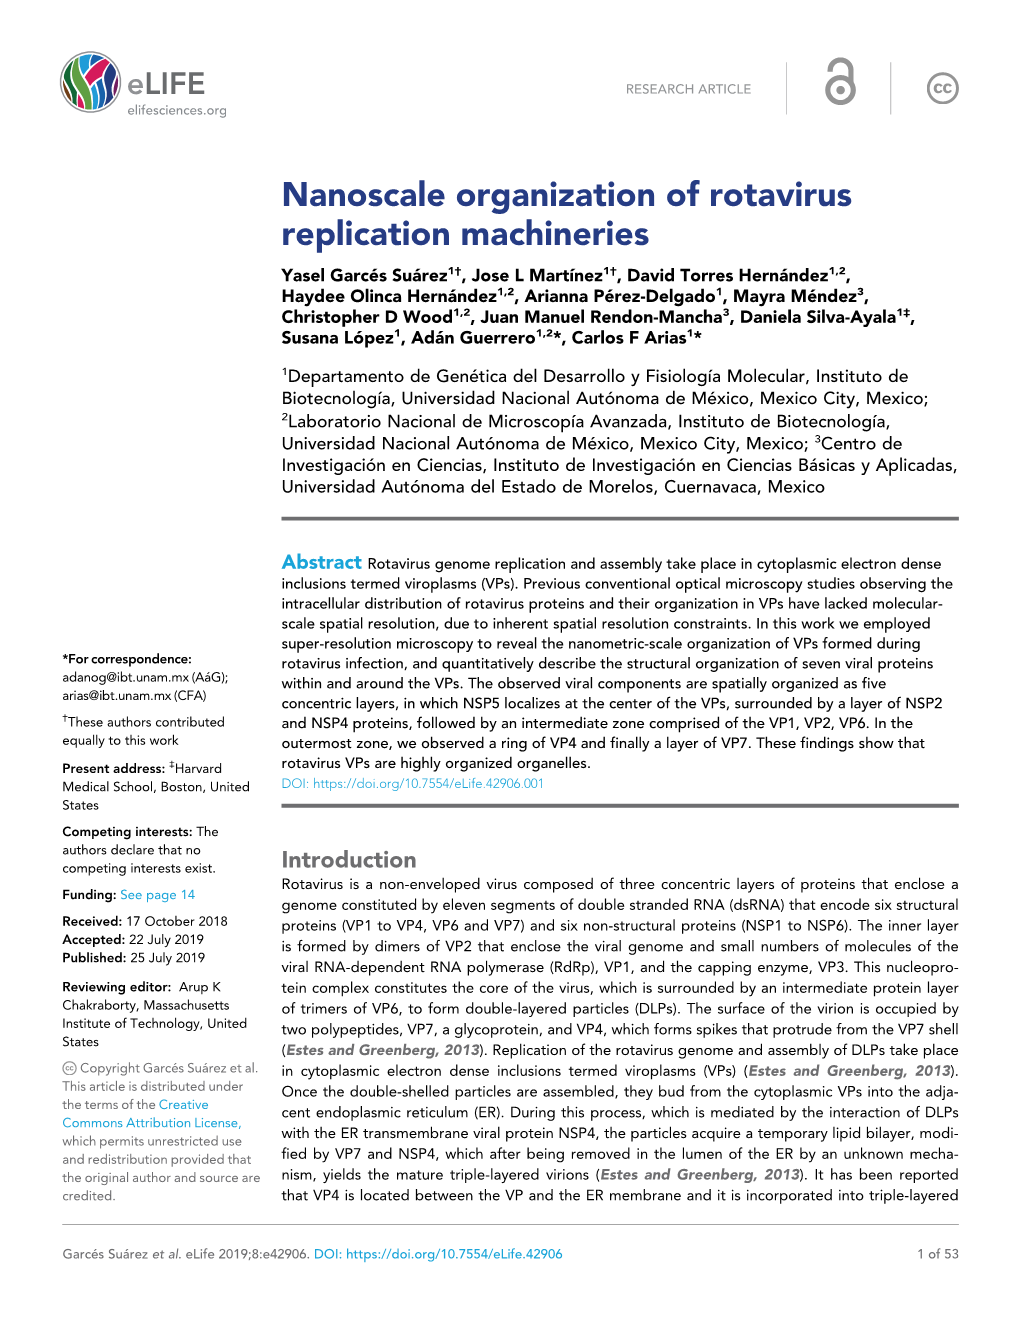 Nanoscale Organization of Rotavirus Replication Machineries